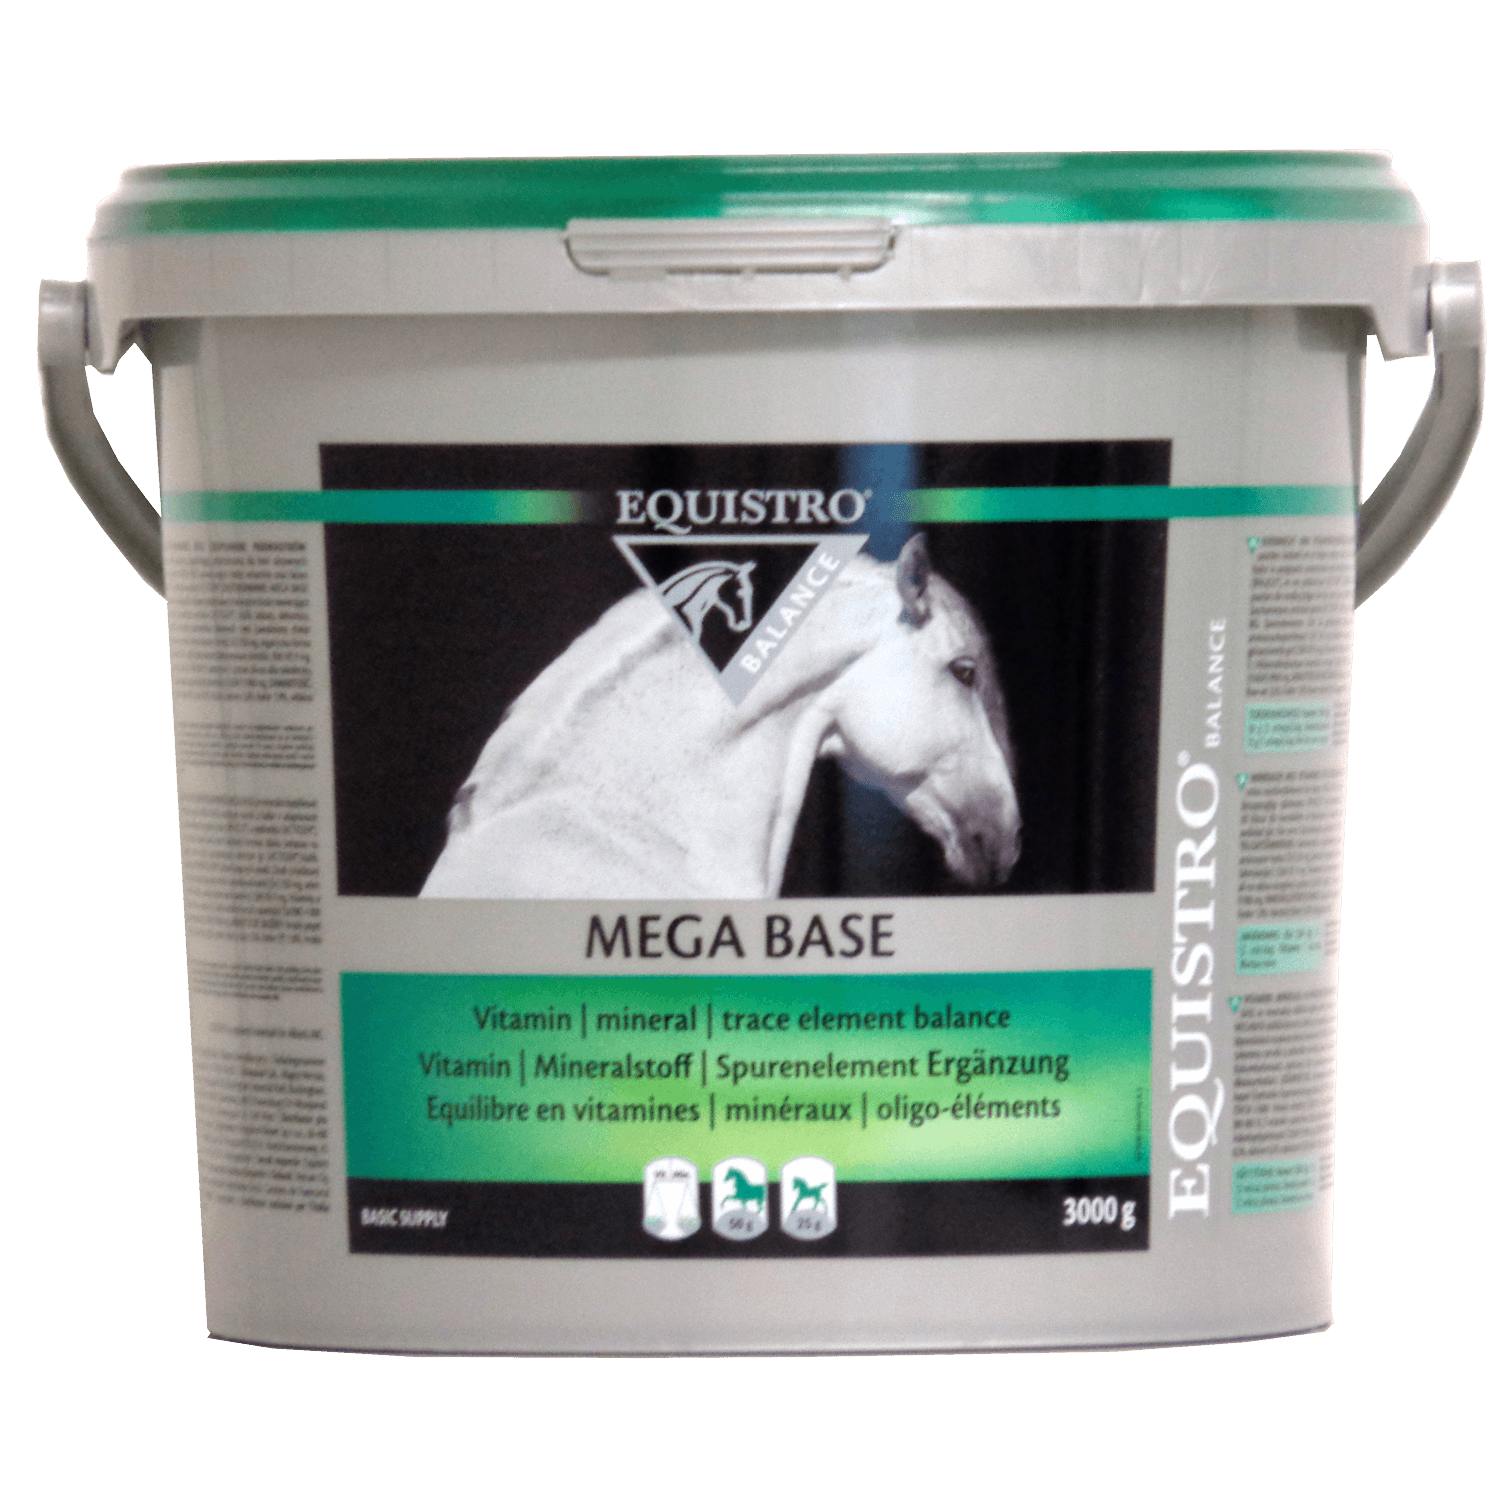 Mega Base - Equistro - Darreichungsform:Pulver, Ergänzungsfuttermittel:Vitamine & Mineralien, Hersteller:Equisto, Tierart:Pferd - Marigin AG Onlineshop für Tierbedarf